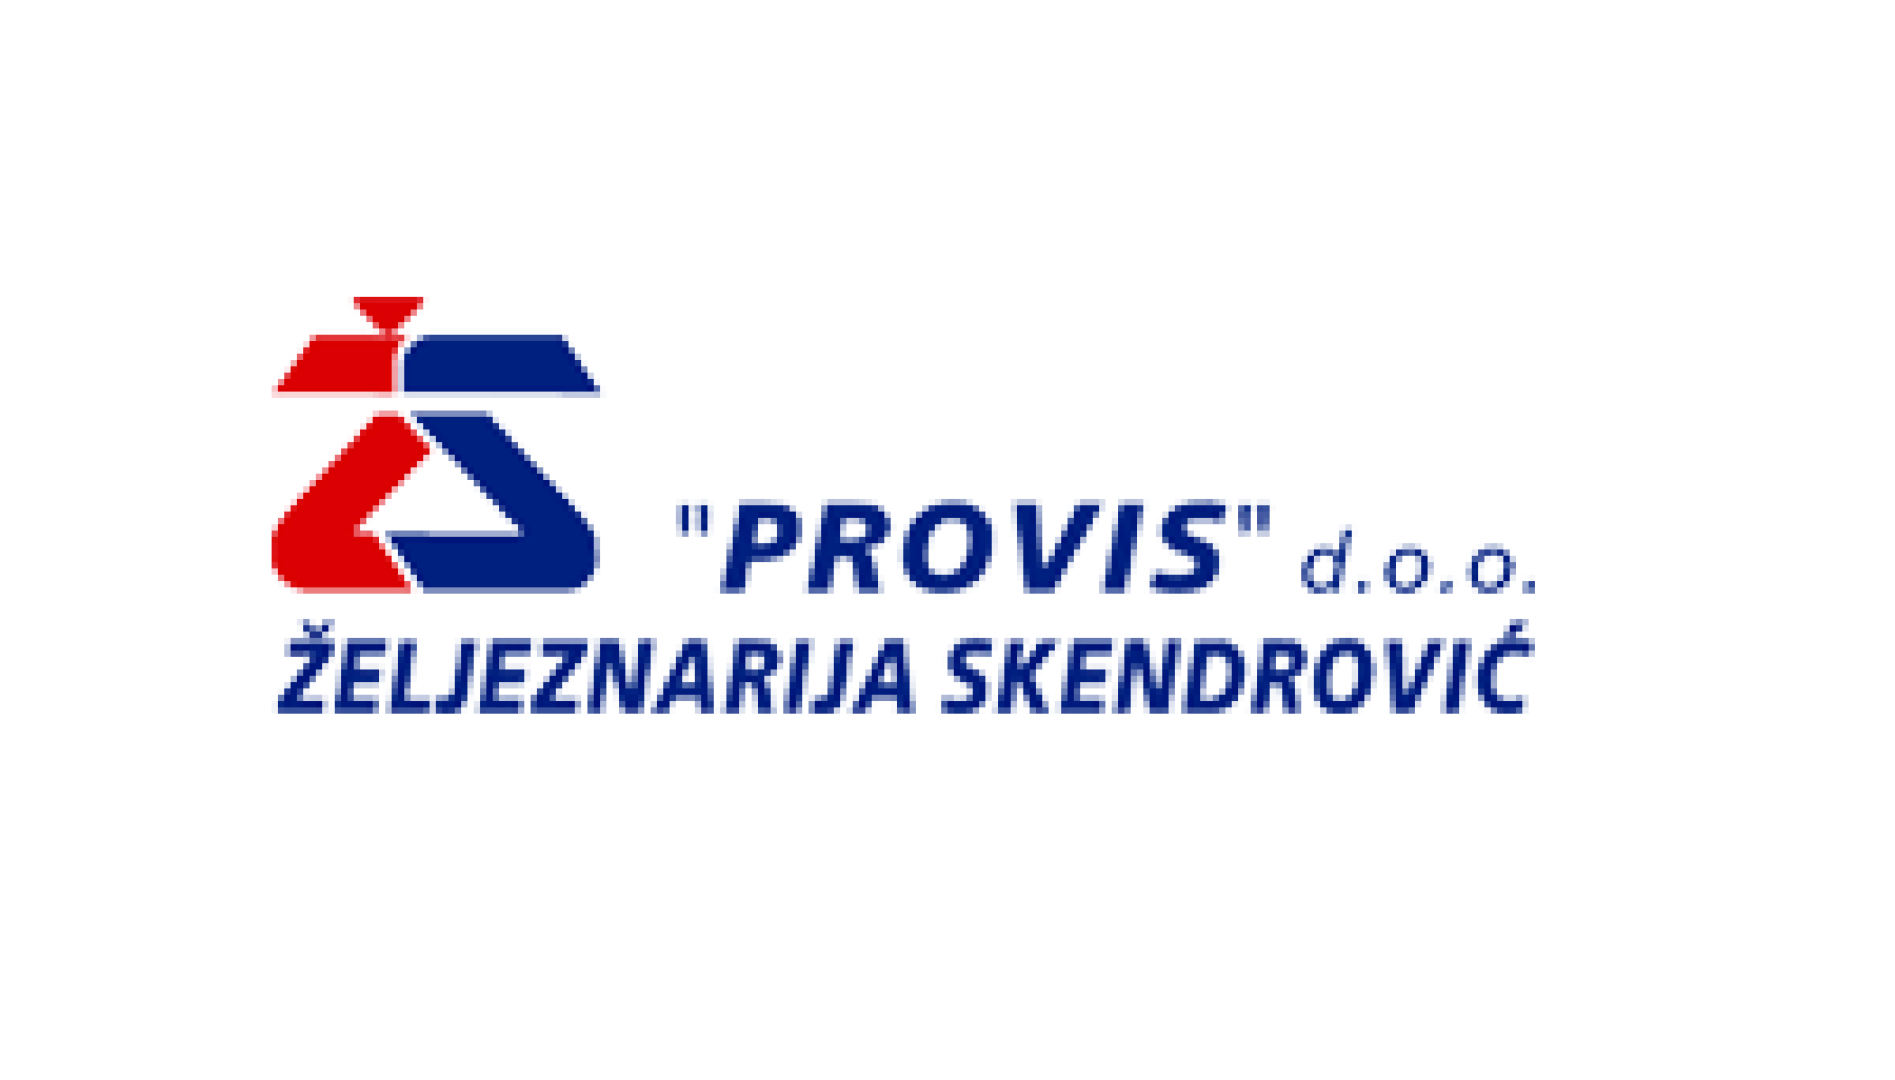 Željeznarija Skendrović - Provis